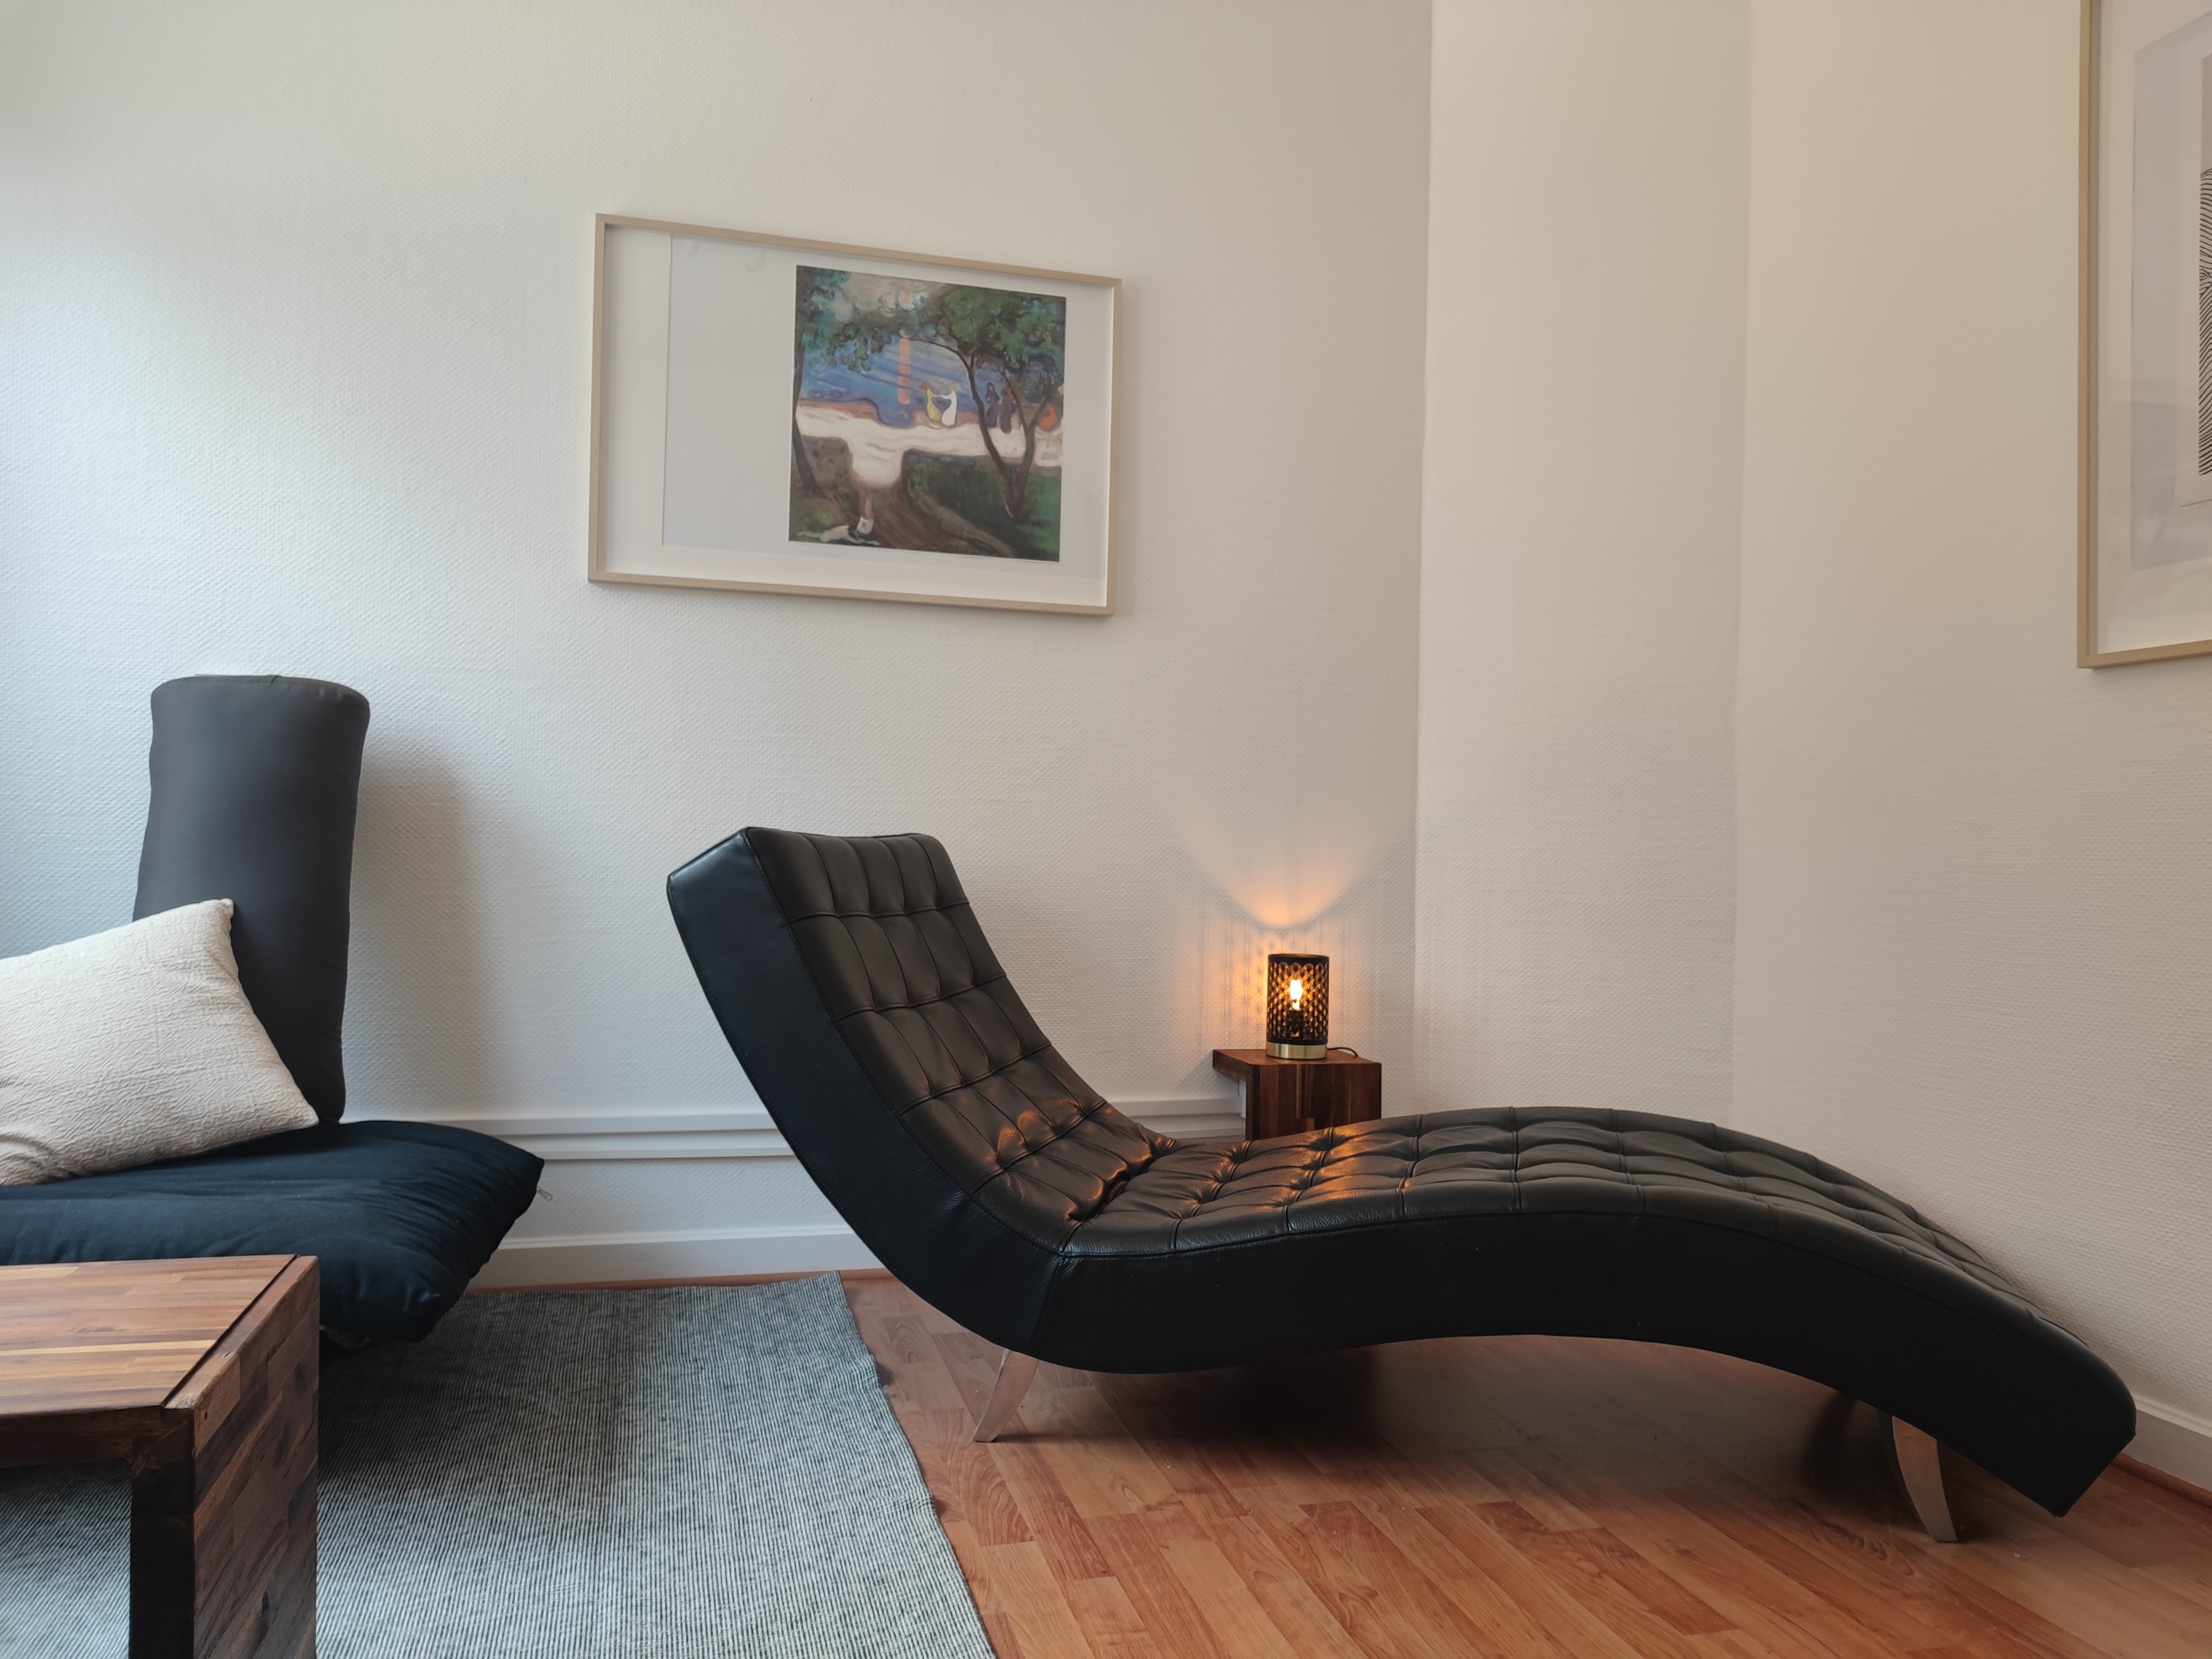 Cabinet de Cyrielle Weisgerber avec fauteuil, divan, bureau fait main, cadre sur le mur, petite lampe allumée